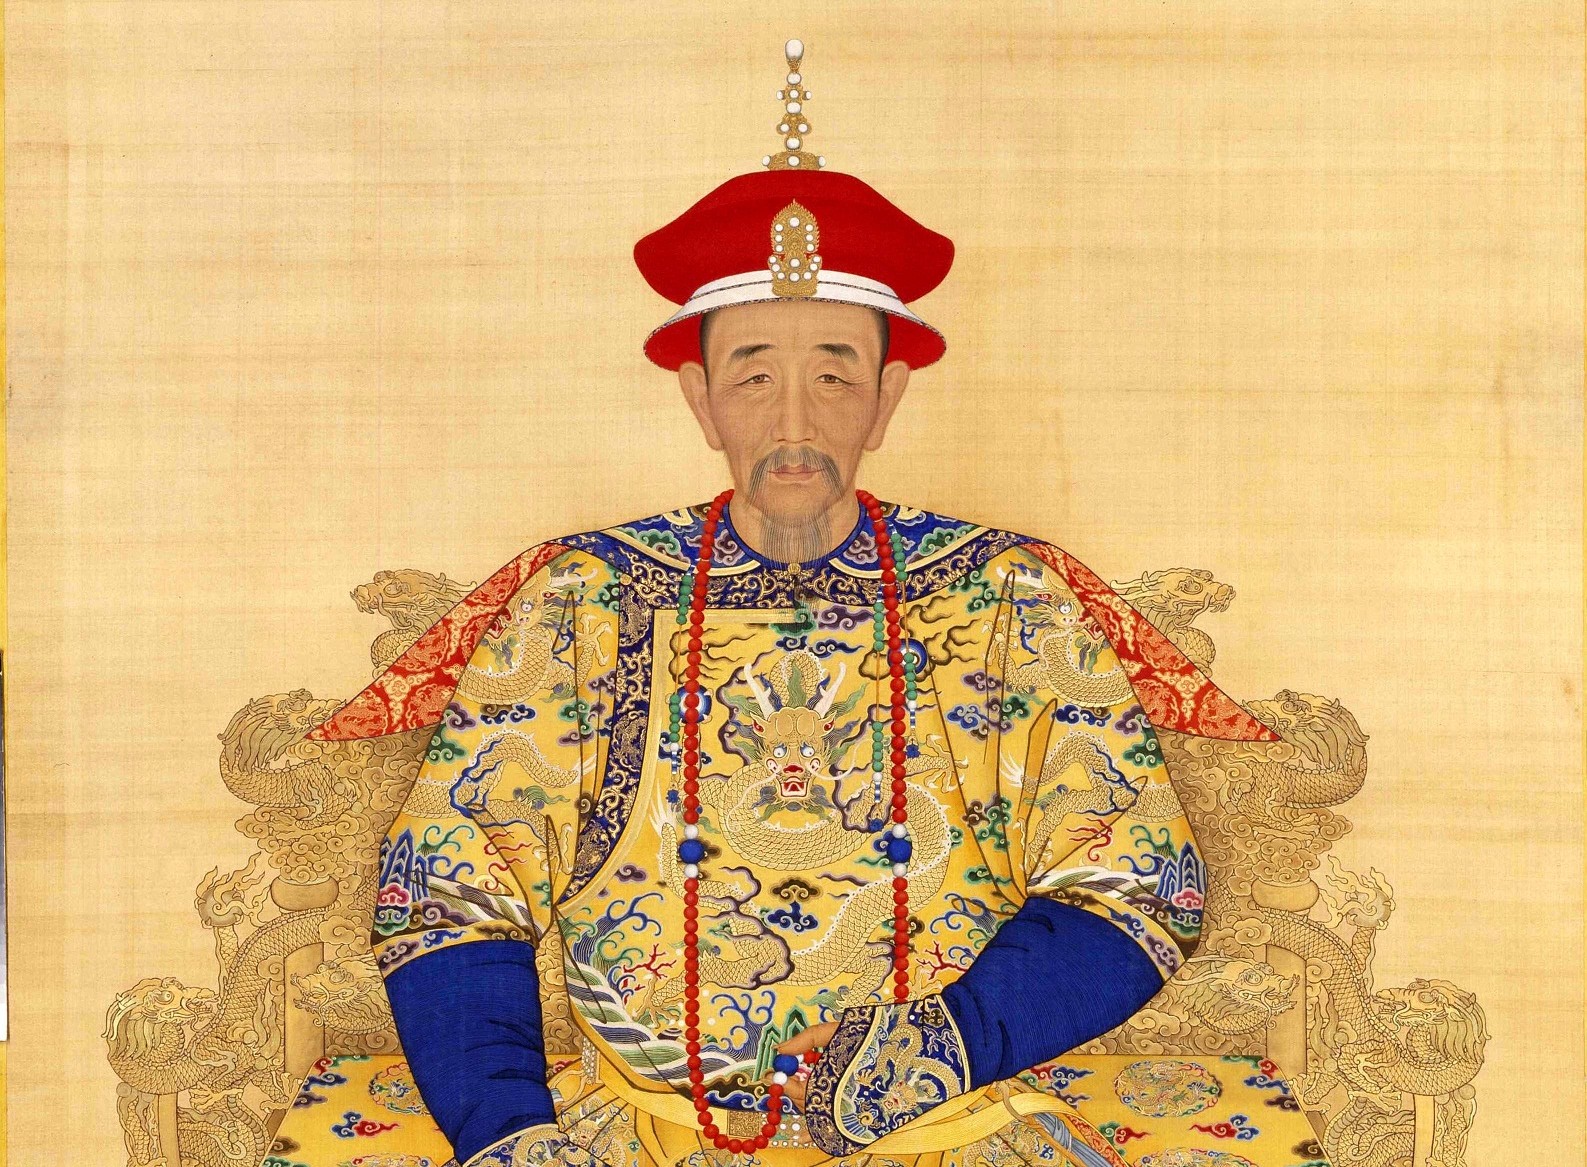 Sự thật khinh ngạc về hoàng đế Khang Hy